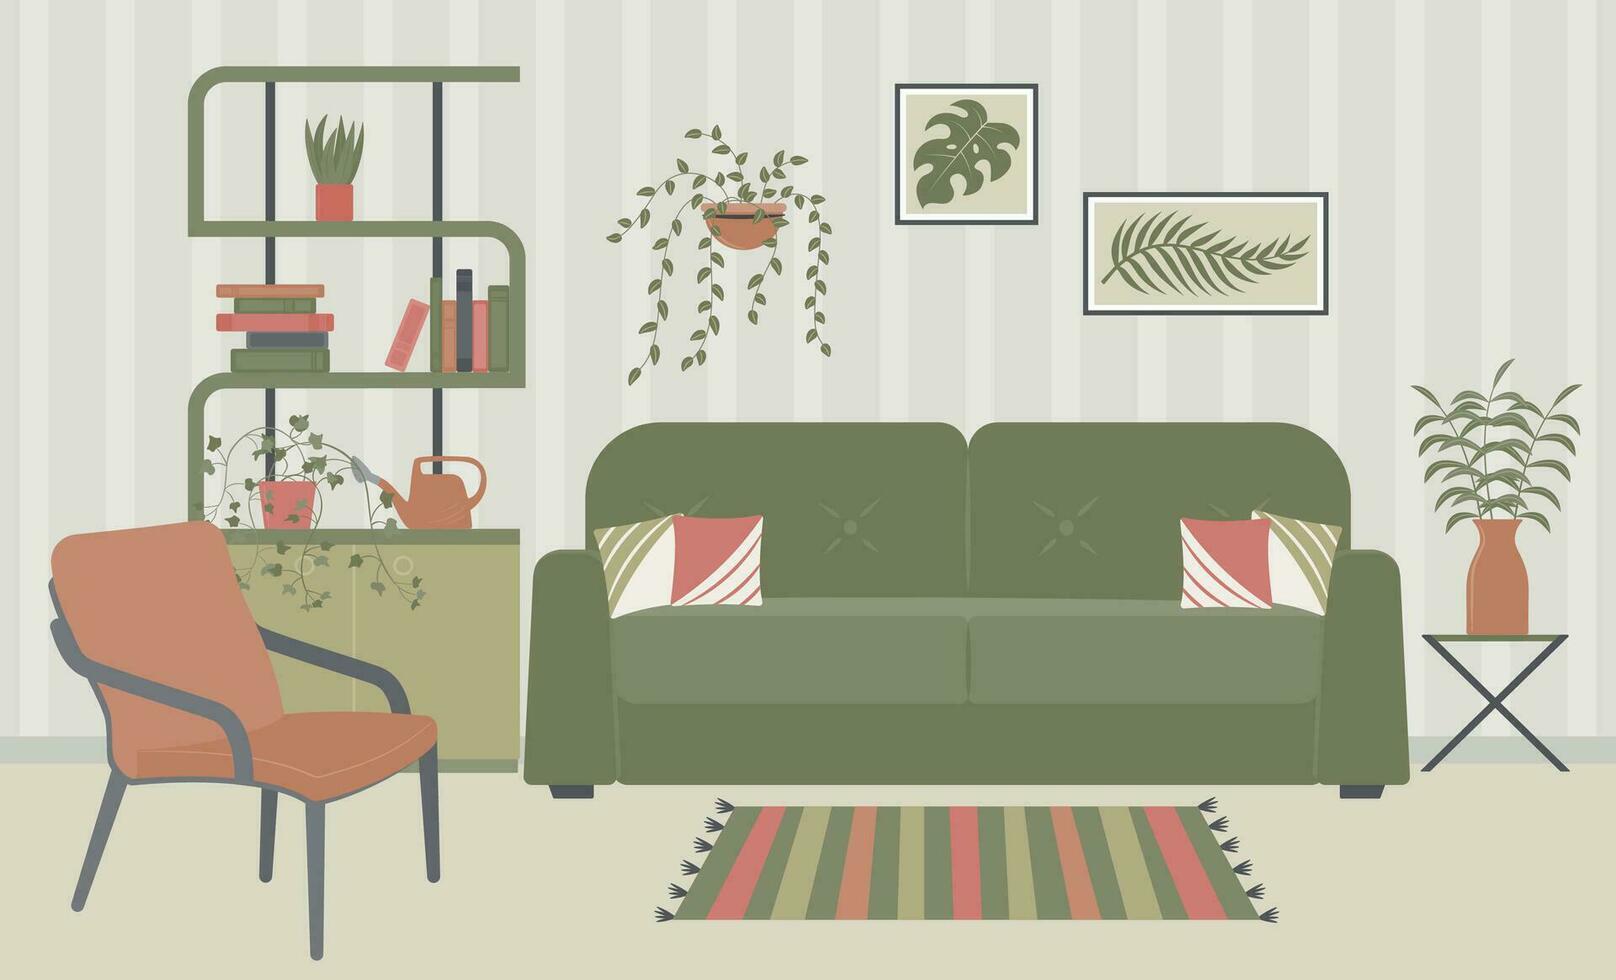 interior diseño de el vivo habitación con mueble. sofá con almohadas, estantes, pinturas en el muro, interior plantas, riego poder, sillón, alfombra, libros. vector